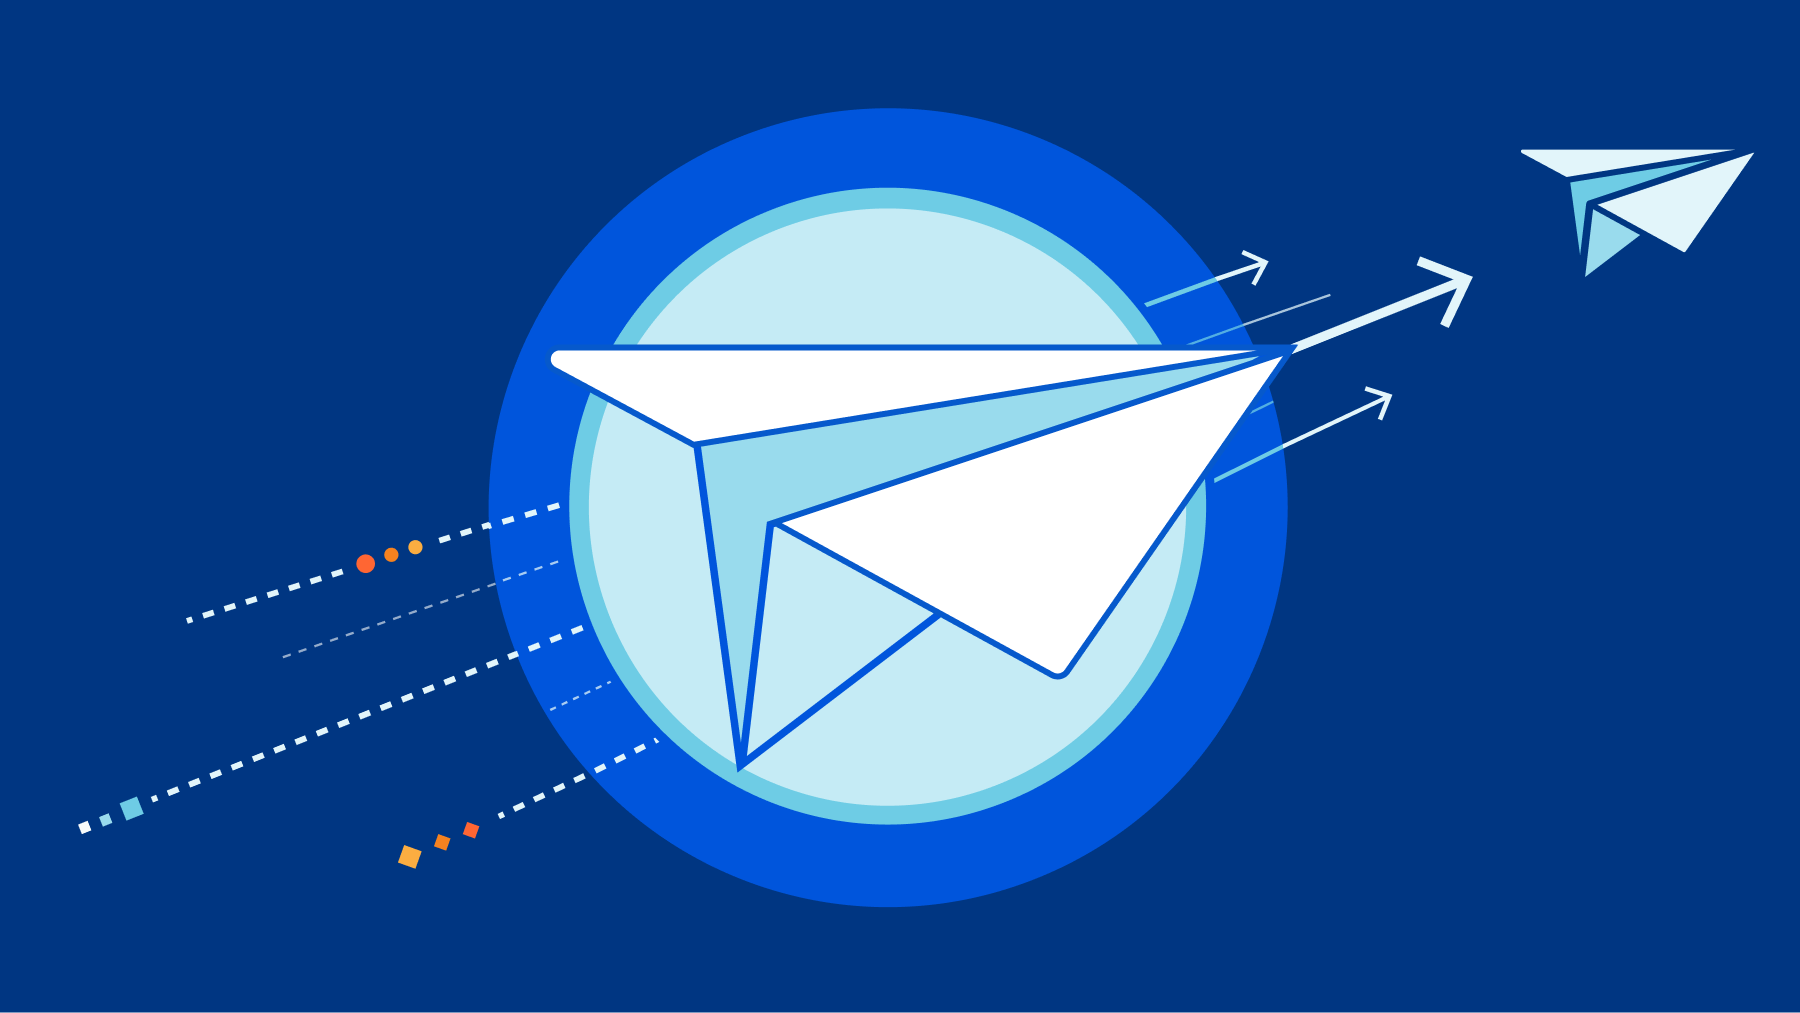 Cloudflare Email Routing: los iconos de aviones de papel que representan los correos electrónicos viajan de izquierda a derecha
